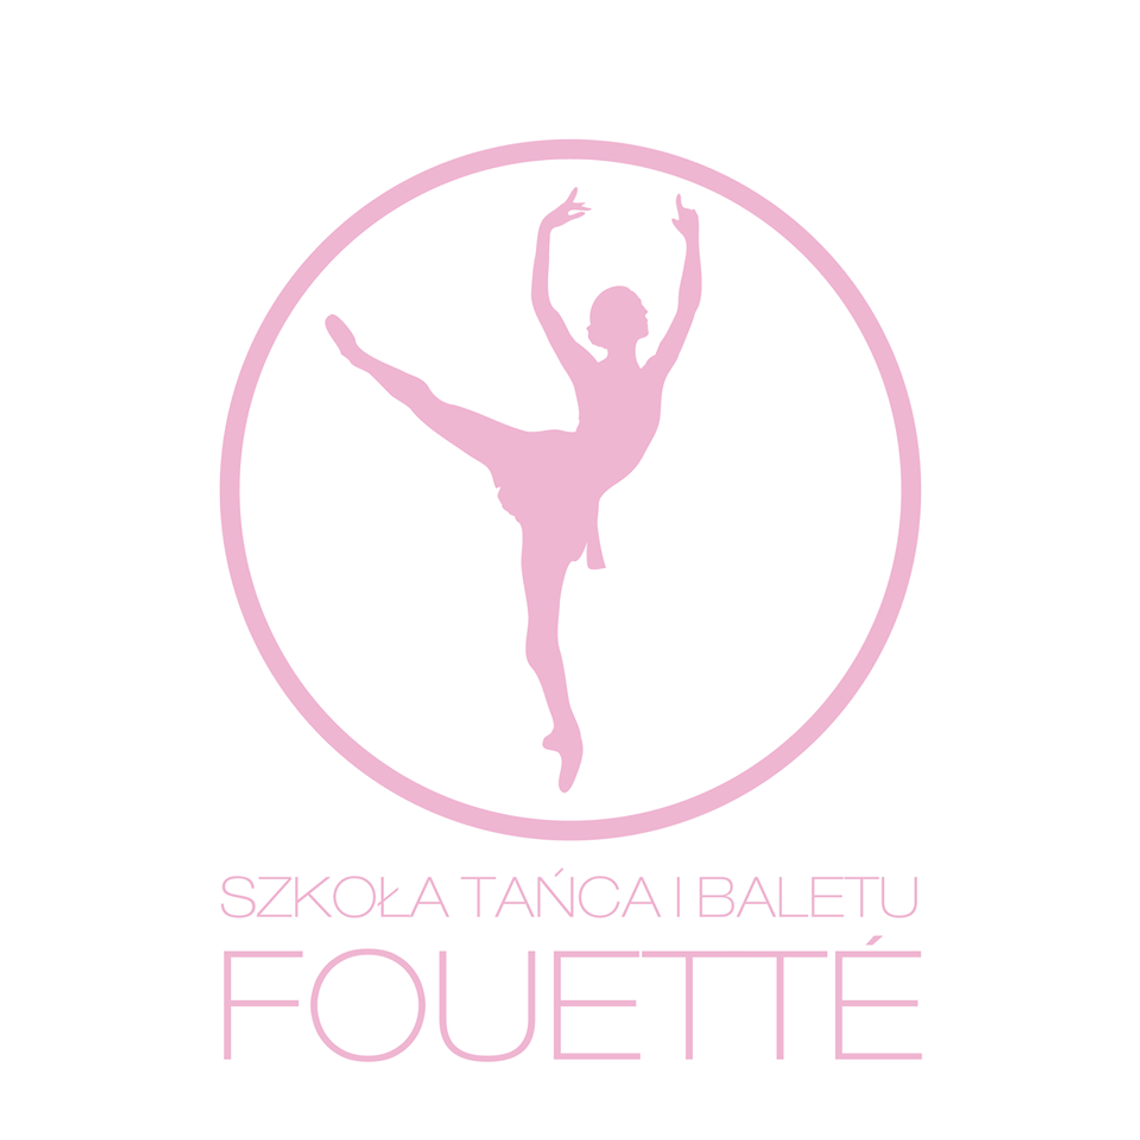 Szkoła Tańca i Baletu "Fouetté"